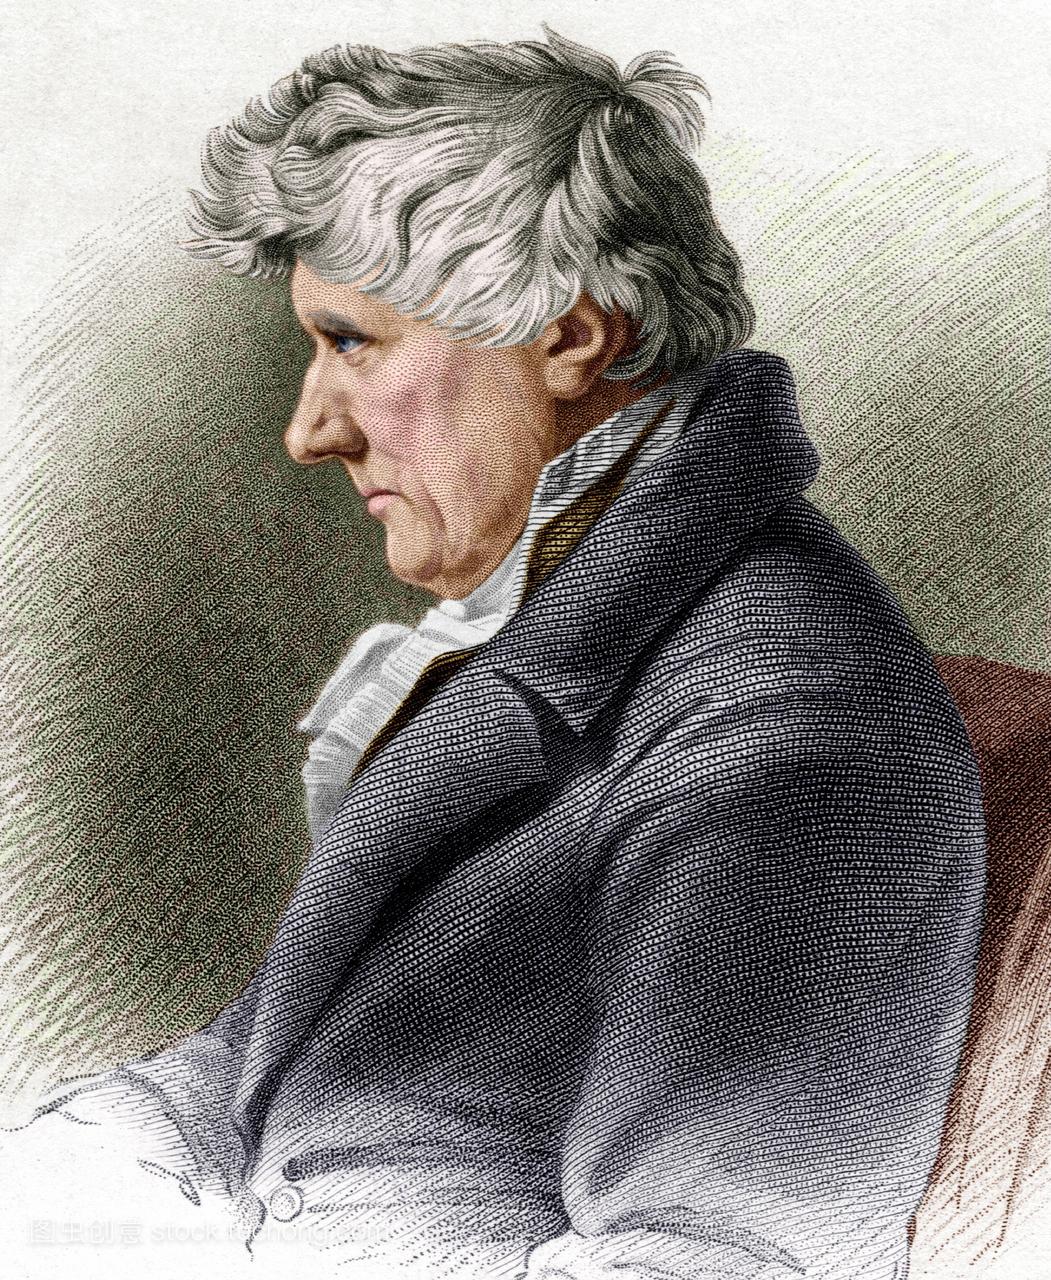 约翰·兰尼1761-1821苏格兰土木工程师。兰尼